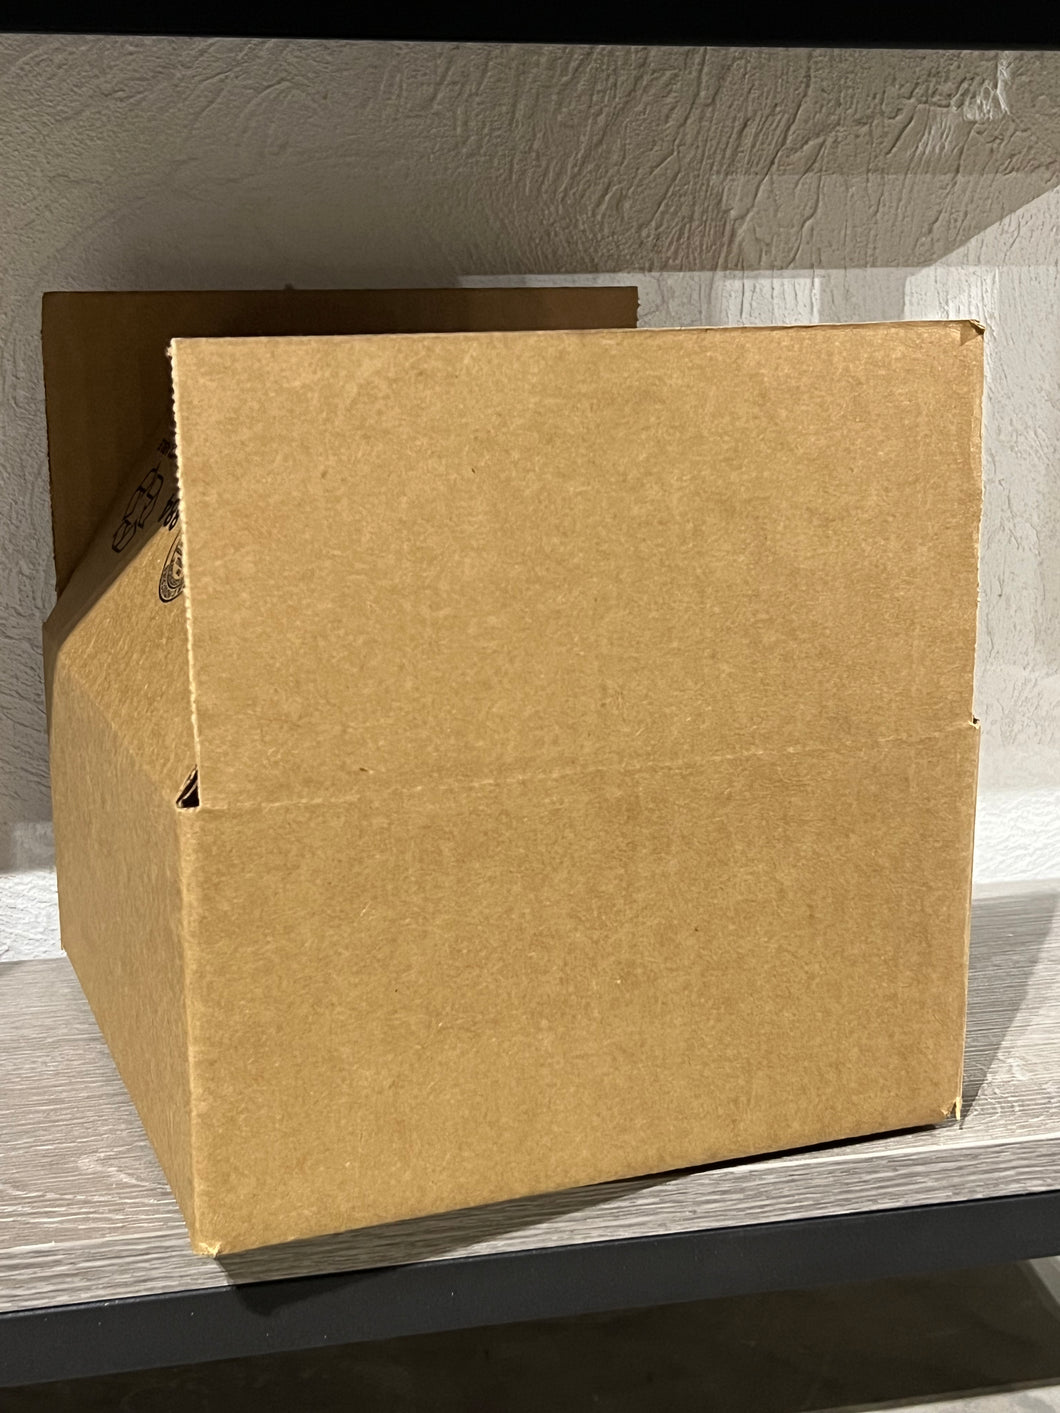 Ultimate Surprise Grab Box